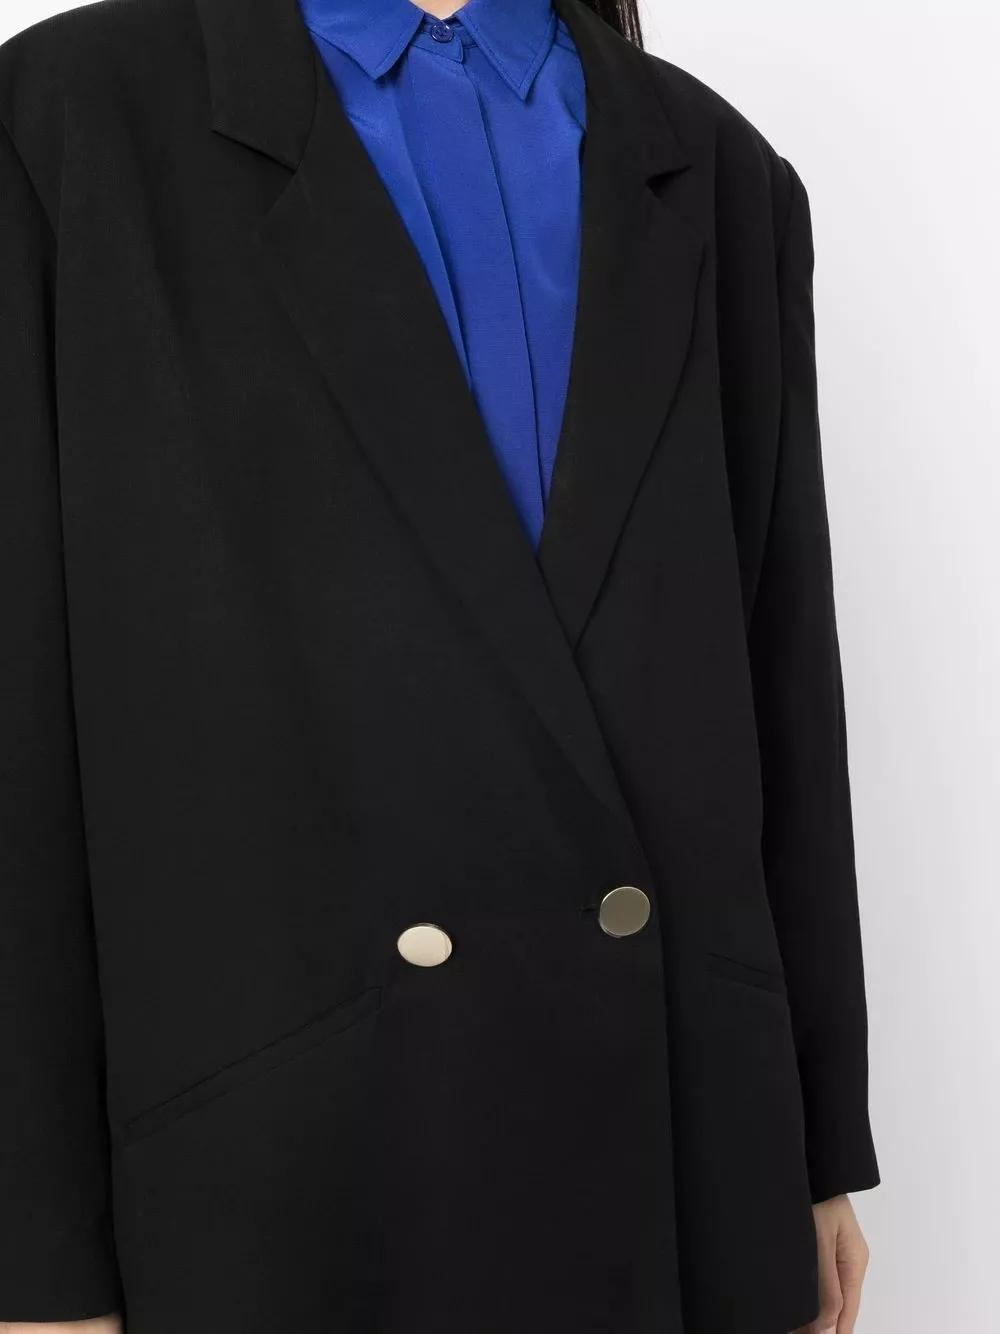 Armani Exchange Blazer Jacket